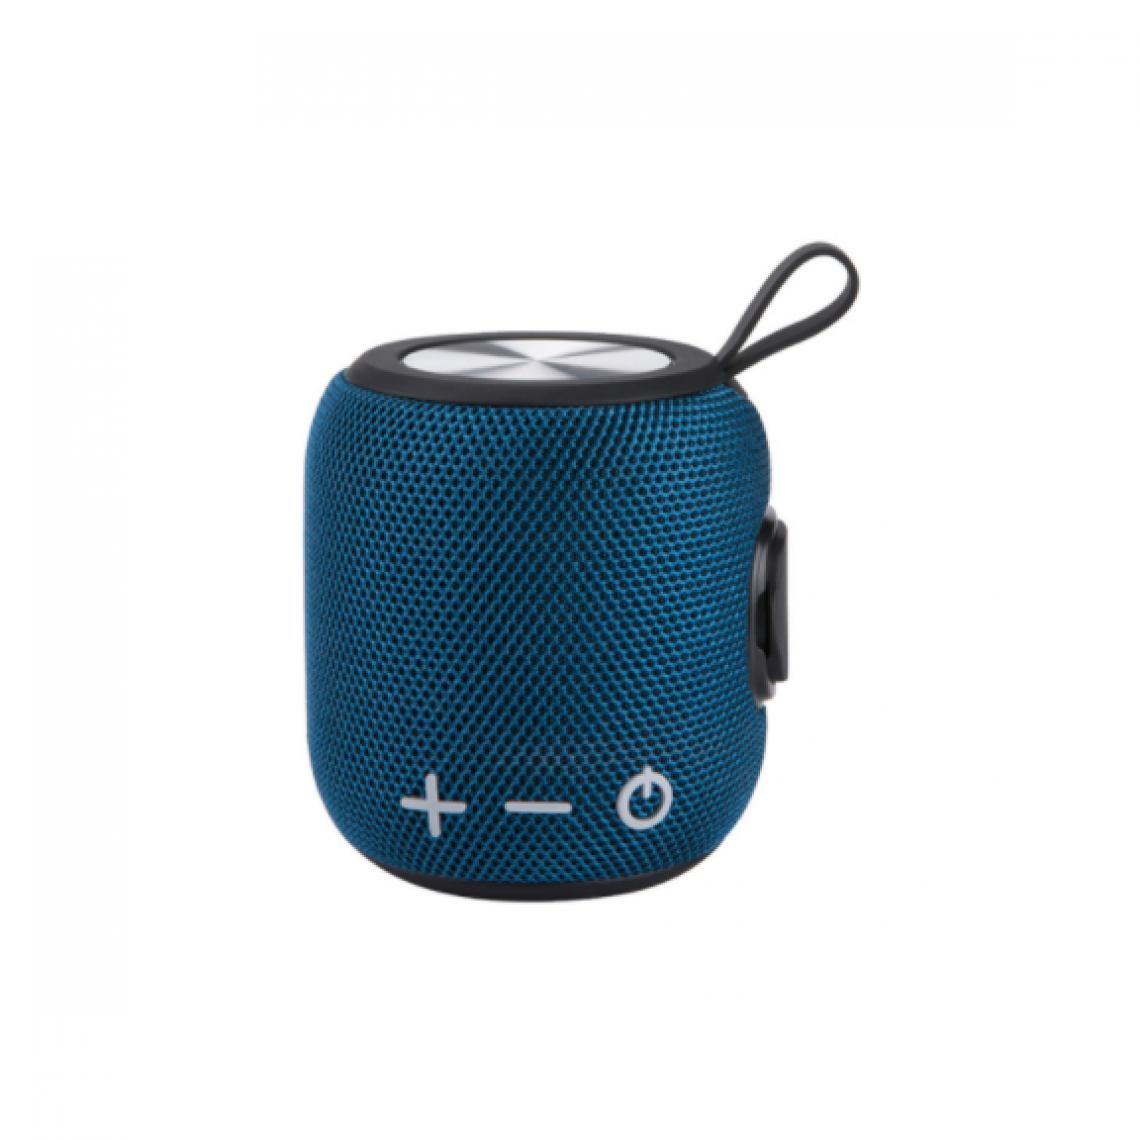 Chrono - Mini haut-parleur Bluetooth portable, haut-parleur sans fil Bluetooth 5.0, son surround HD à 360 degrés et basses stéréo complètes, étanche IPX9, adapté aux voyages, aux piscines et aux douches(Bleu foncé) - Enceintes Hifi